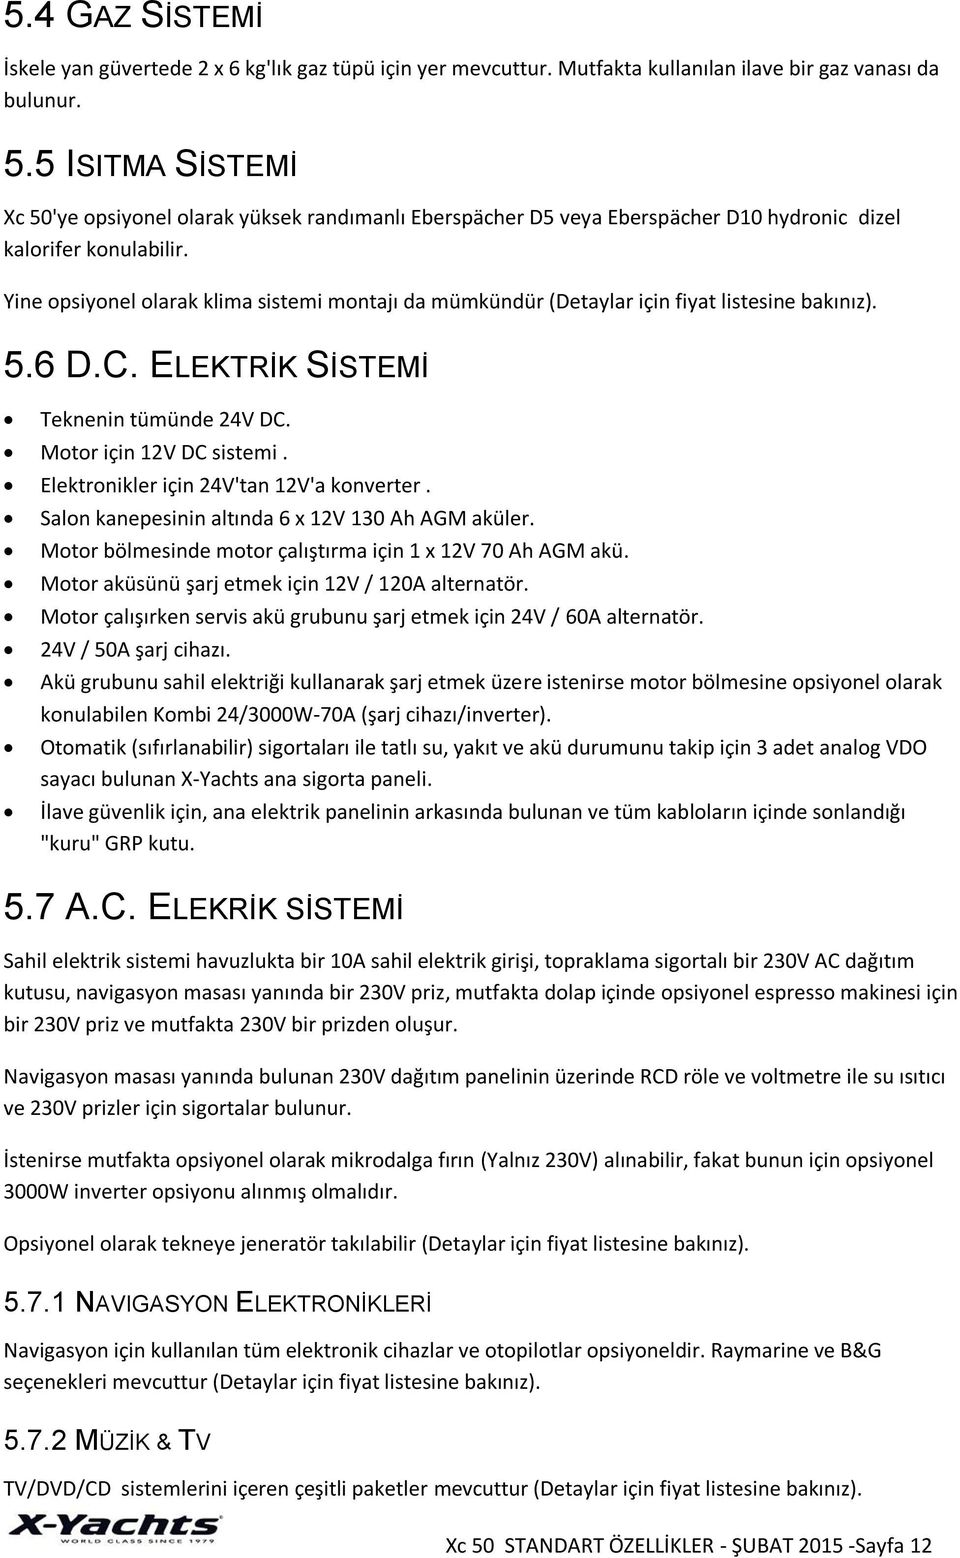 Yine opsiyonel olarak klima sistemi montajı da mümkündür (Detaylar için fiyat listesine bakınız). 5.6 D.C. ELEKTRİK SİSTEMİ Teknenin tümünde 24V DC. Motor için 12V DC sistemi.